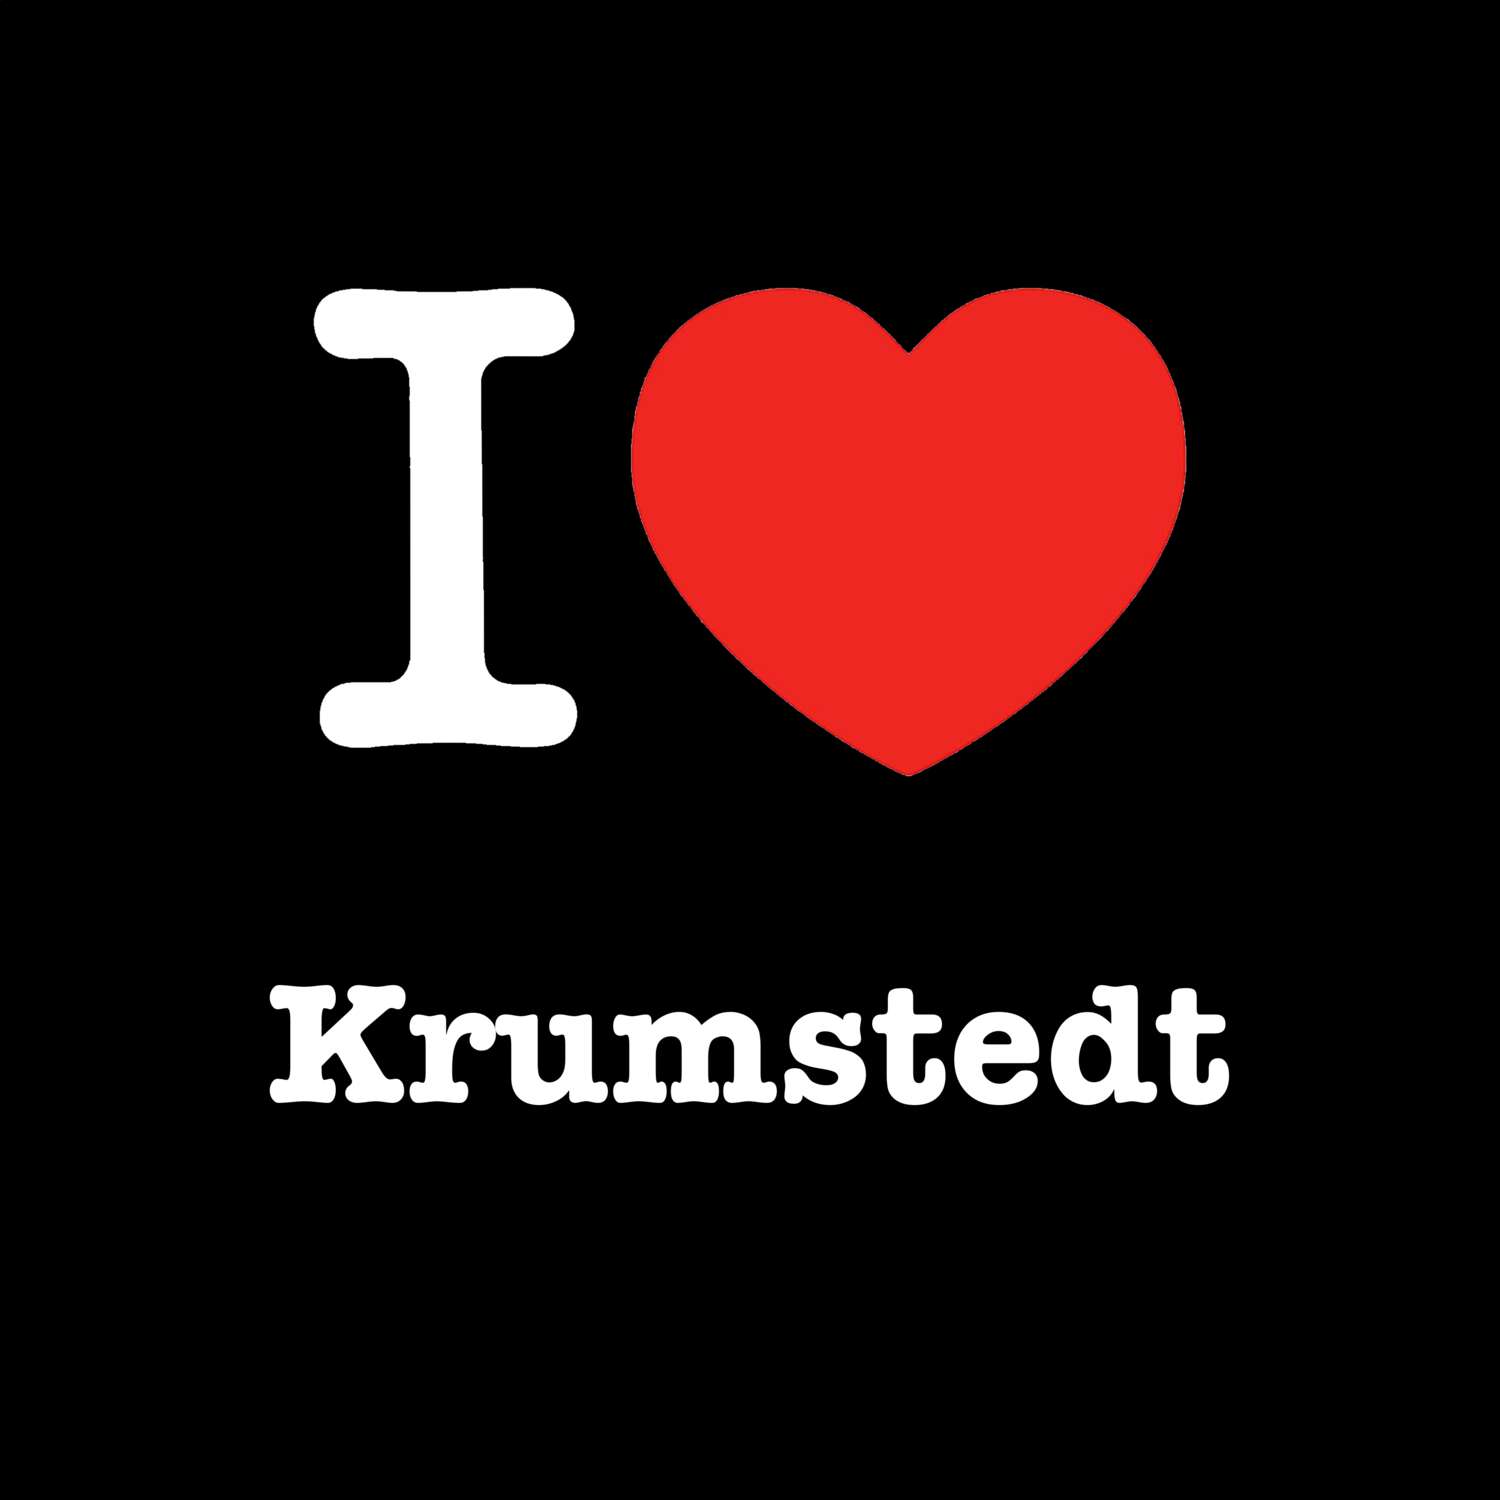 Krumstedt T-Shirt »I love«